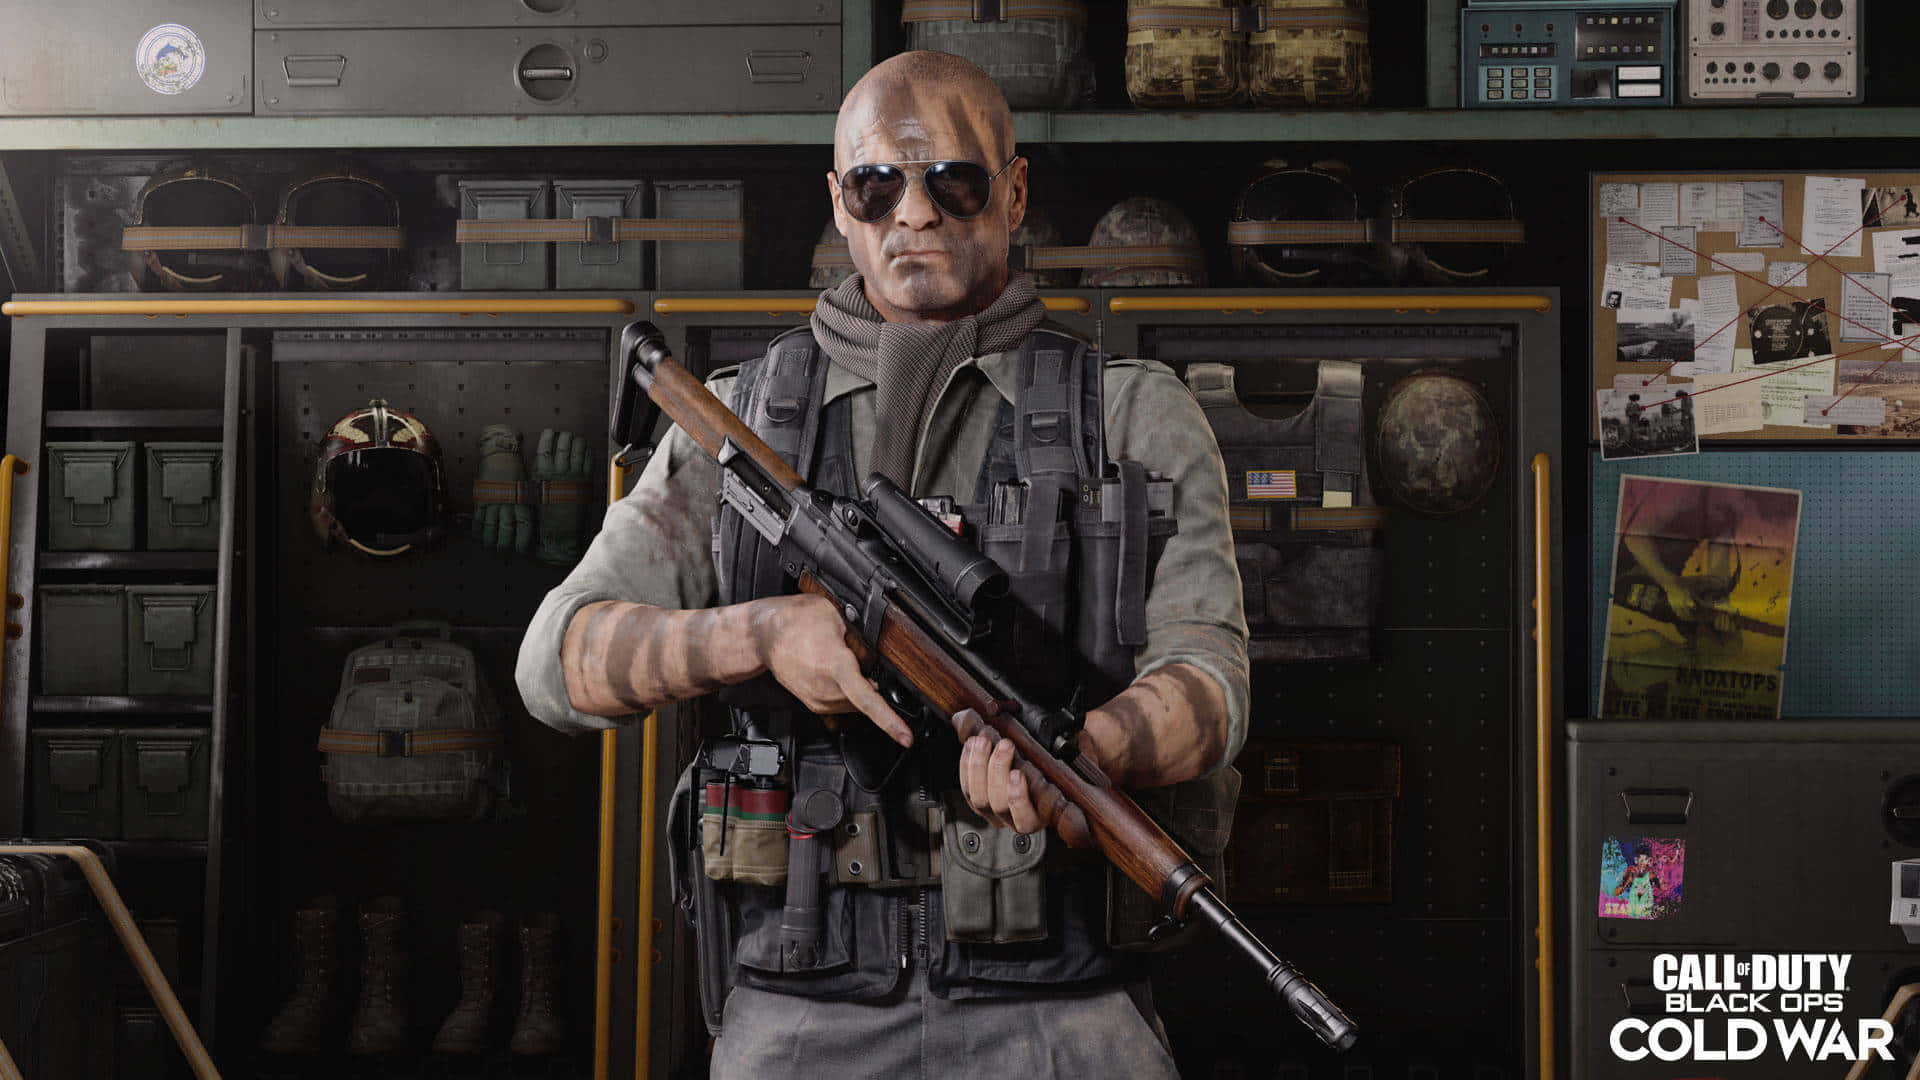 Tag din Call of Duty-oplevelse til næste niveau med Black Ops 4.